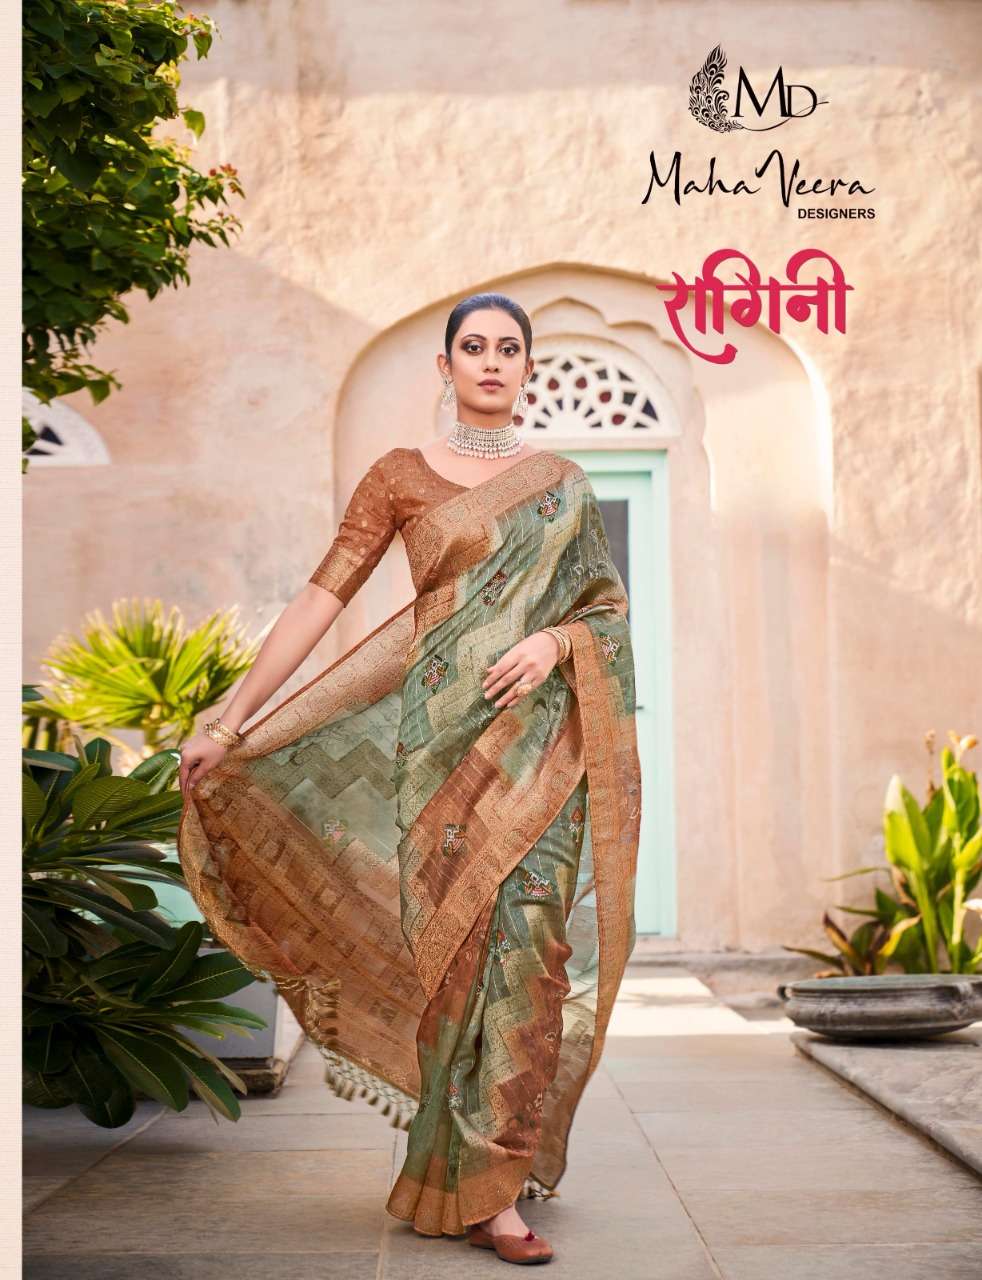 mahaveera designers ragini silk jacquard exclusive sarees supplier